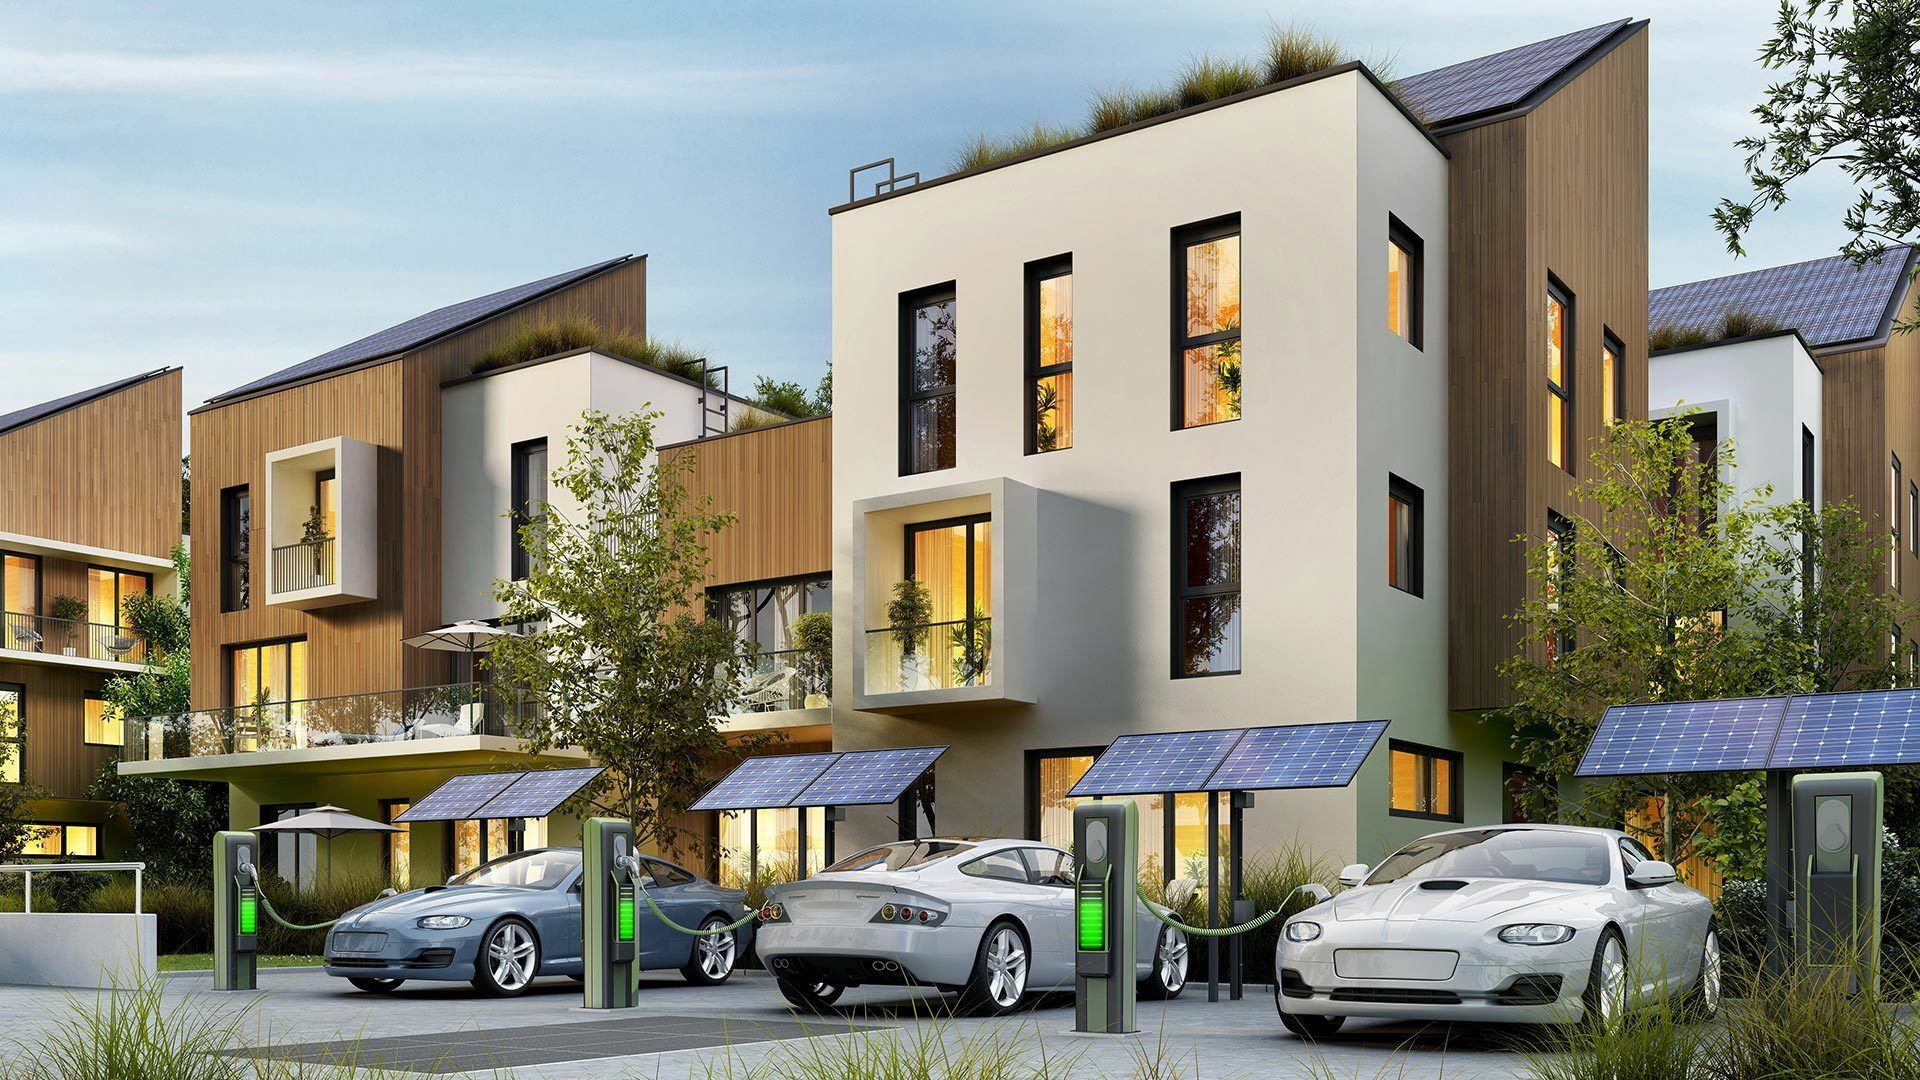 3D-Simulation einer modernen Wohnsiedlung mit Elektroautos, Photovoltaikanlagen und Ladestationen